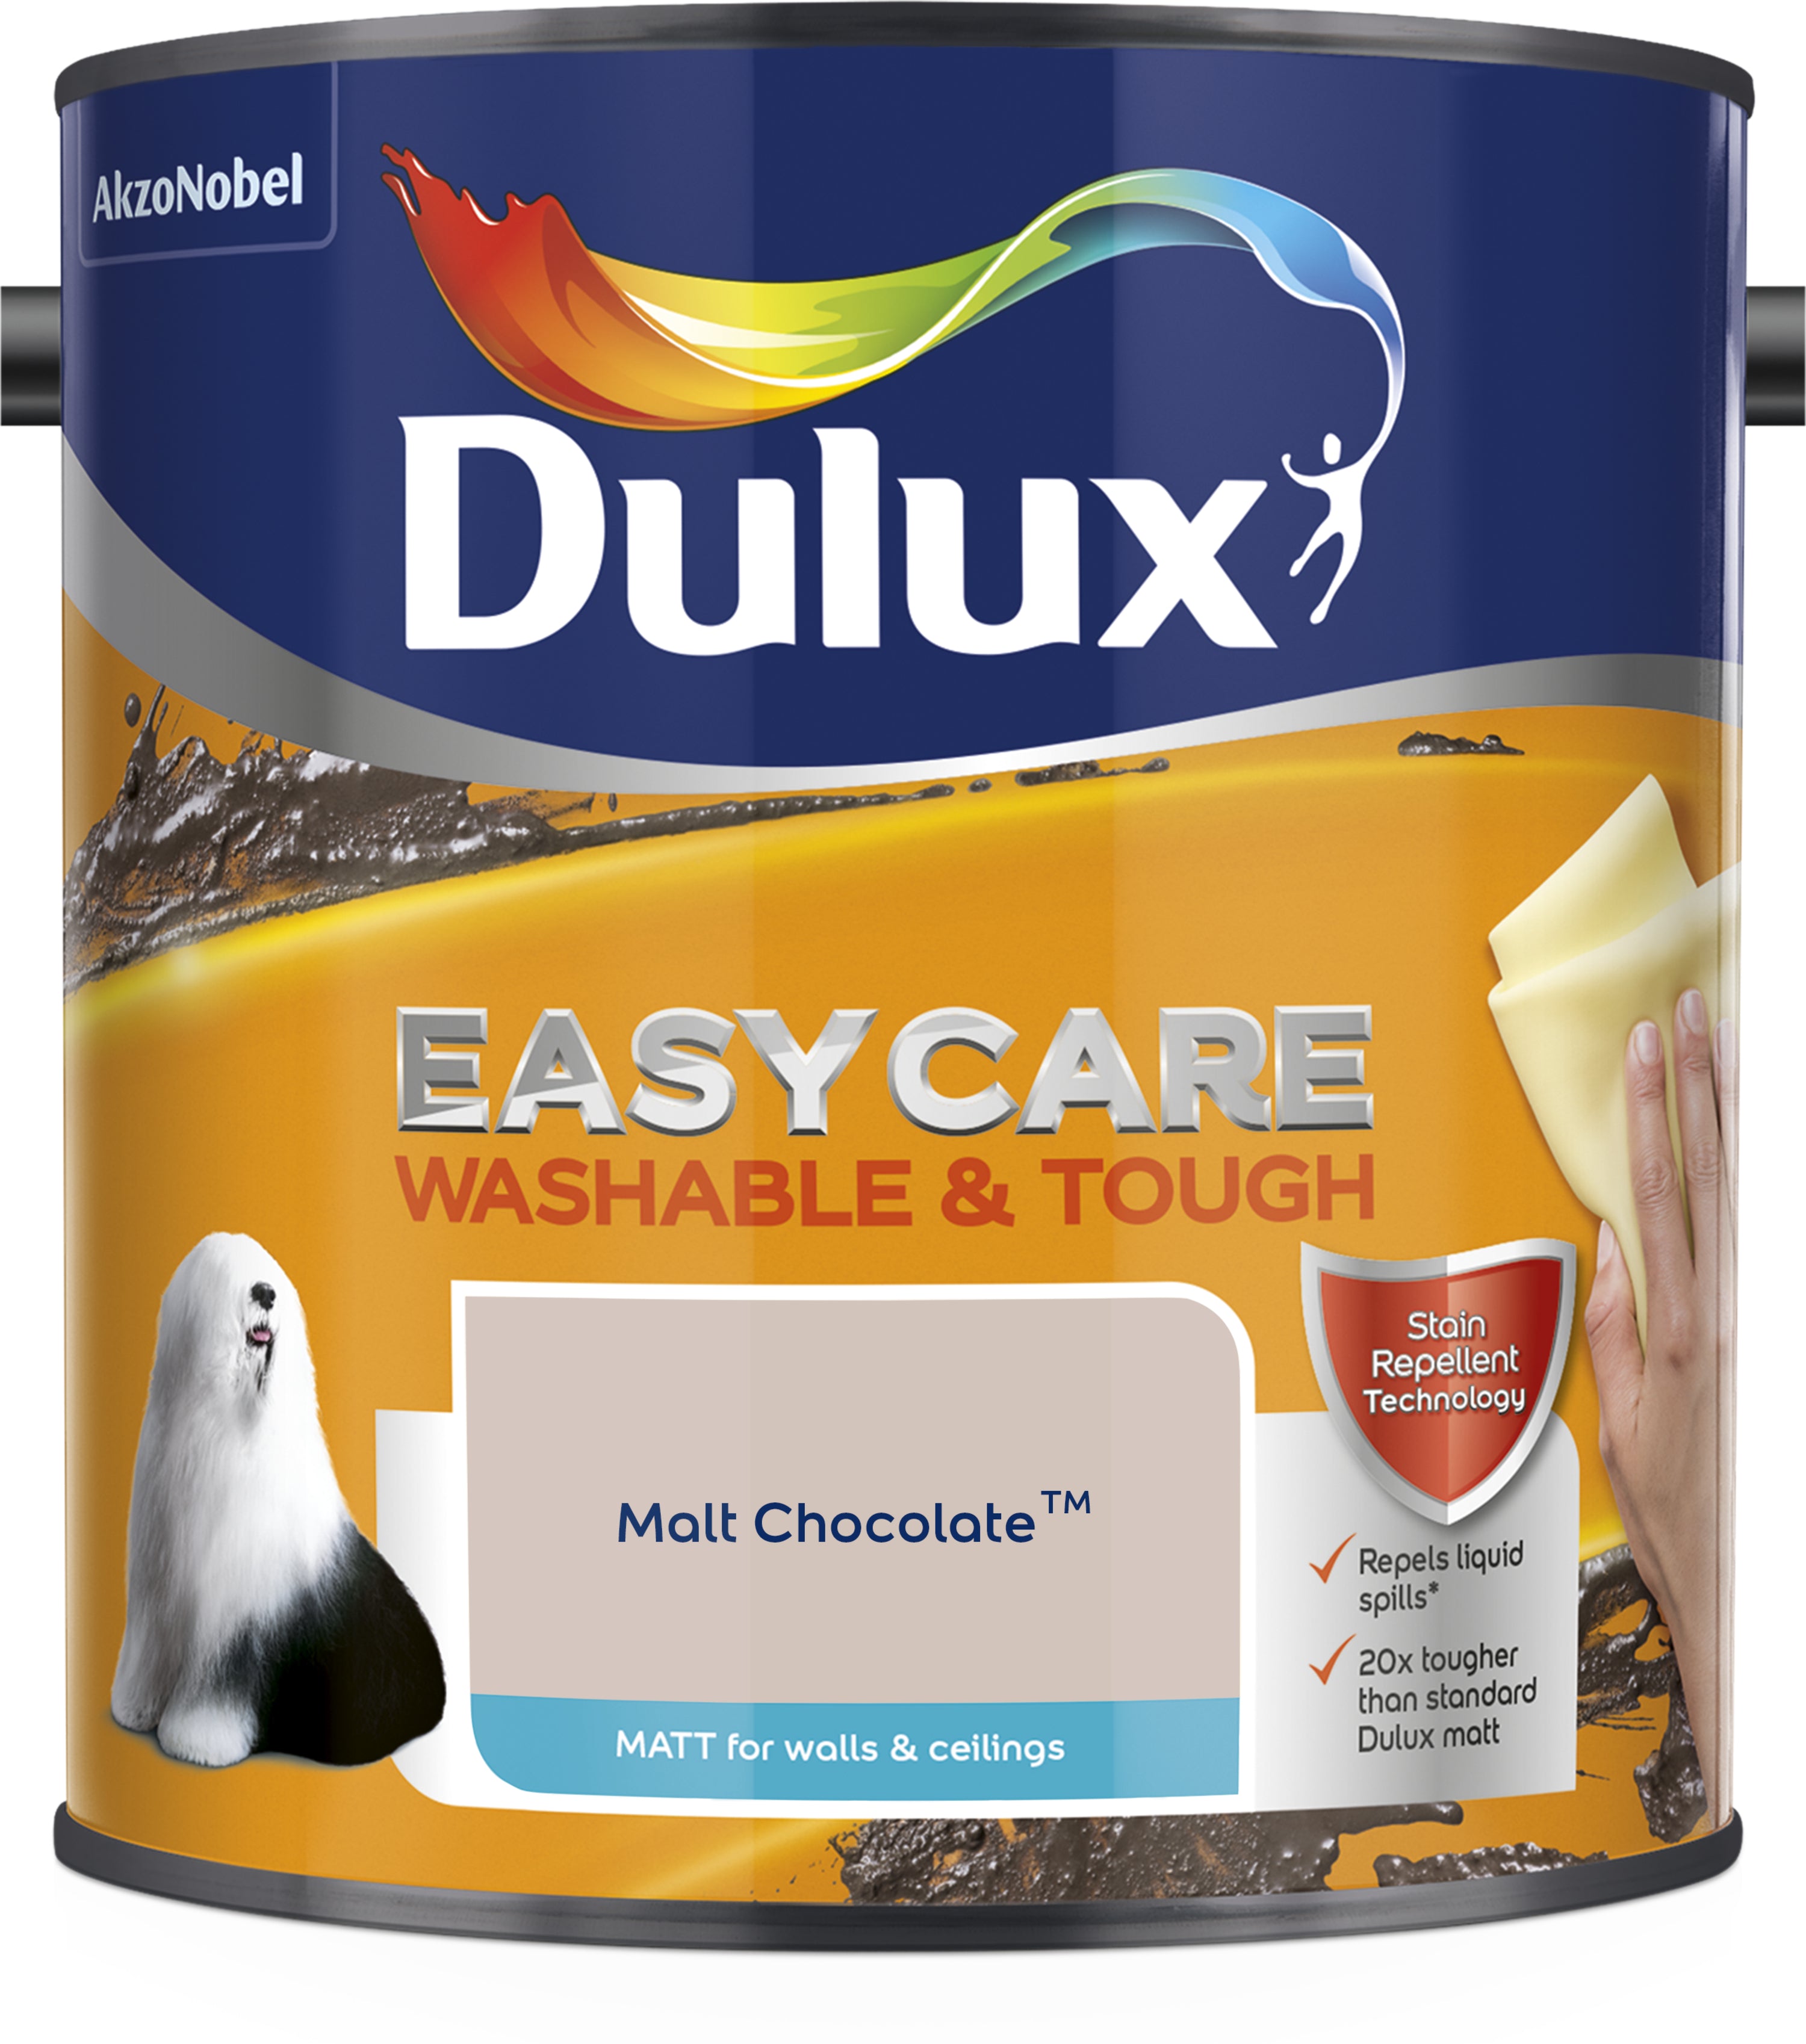 Dulux Easycare Washable & Tough Matt Malt Chocolate 2.5L